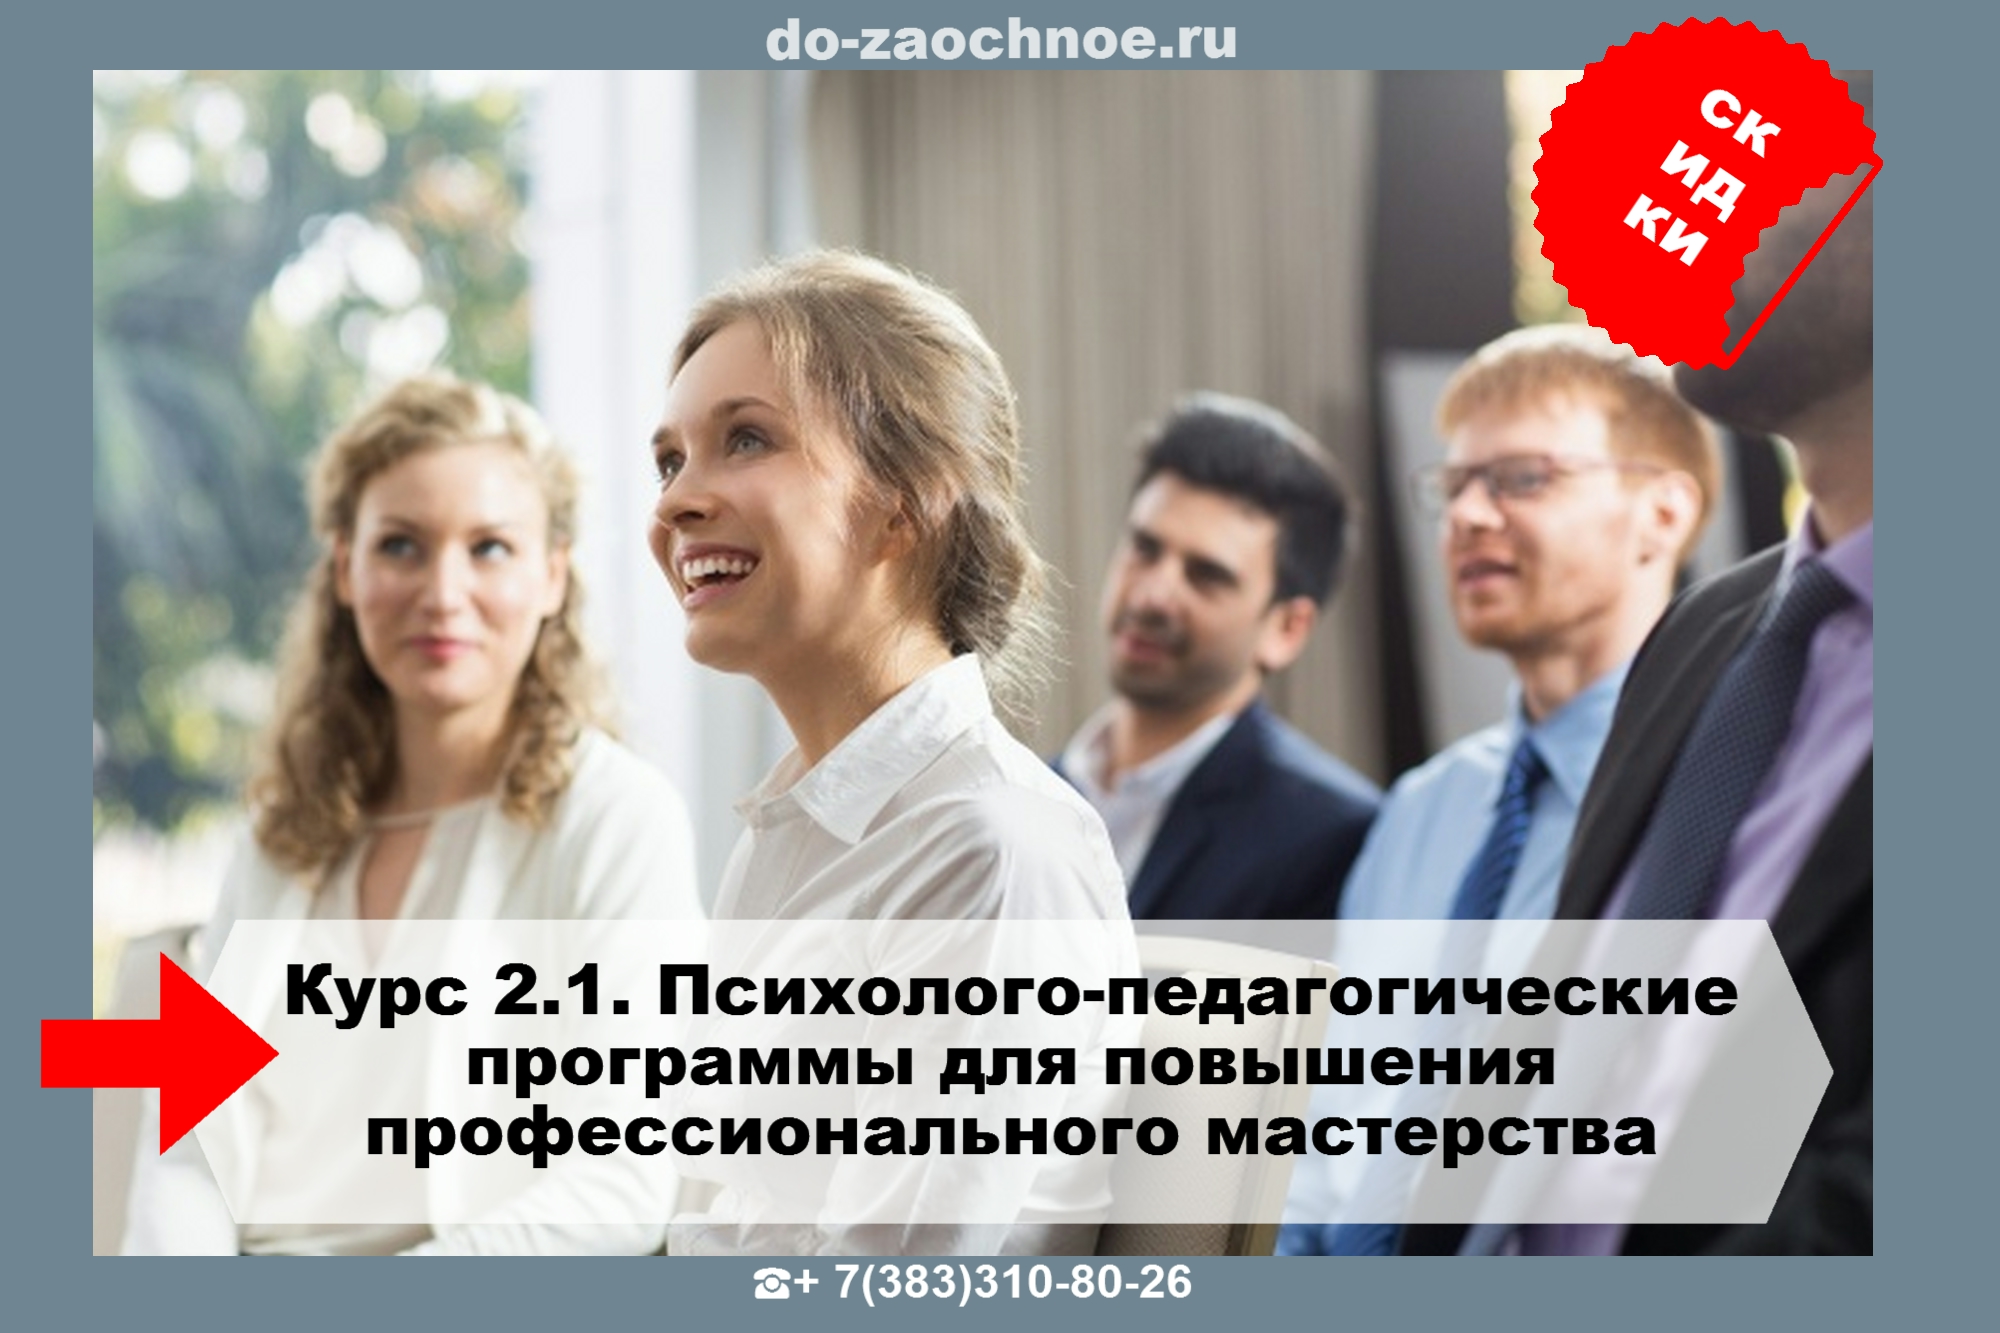 ИДПК дистанционные курсы для повышения профессионального мастерства на do-zaochnoe.ru 